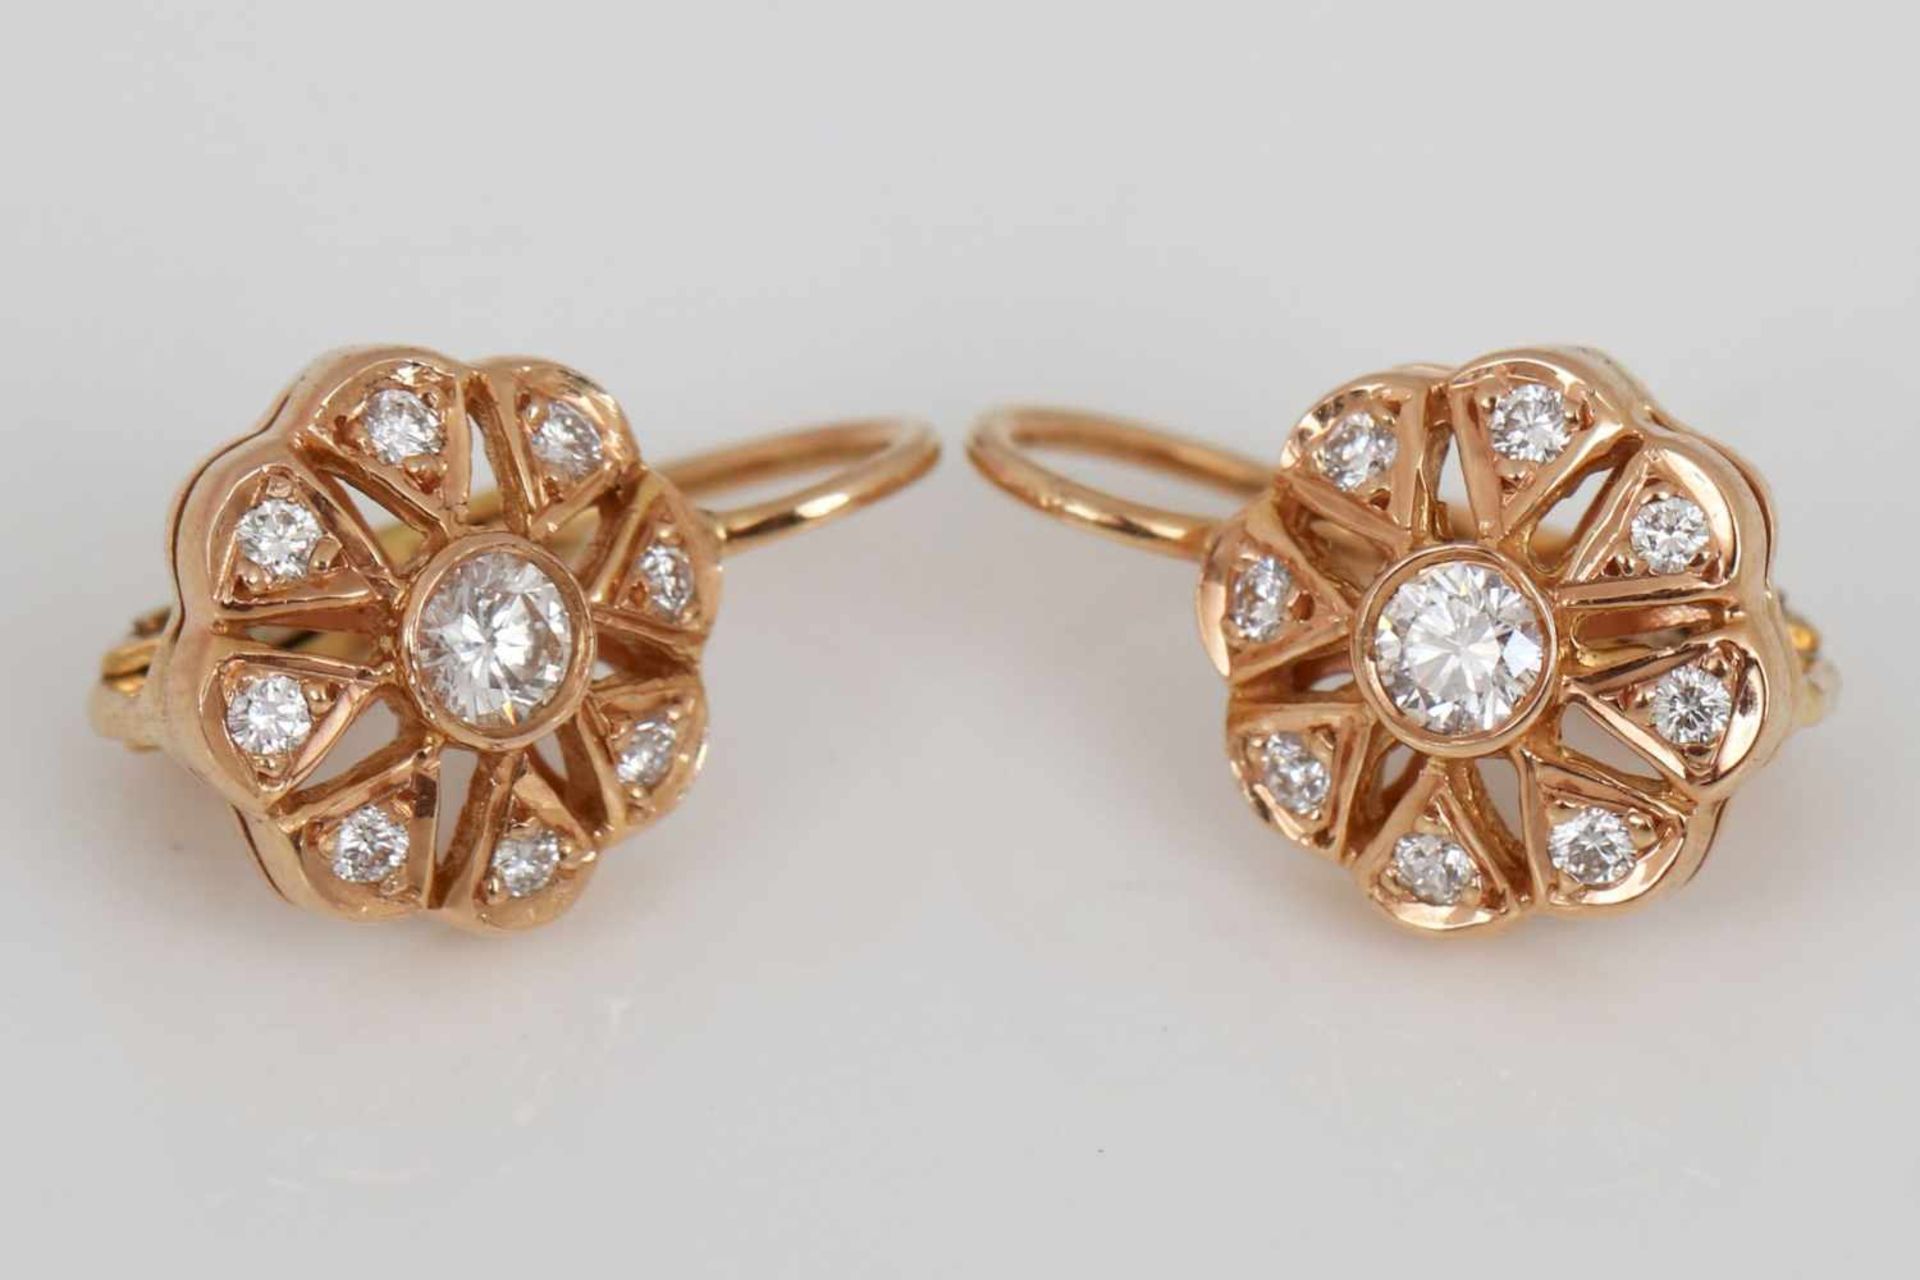 Paar Ohrhänger18K Rotgold und 8 Diamanten, mittig ein Brillant (ca. 0,08ct.), Blütenform, L ca. 1, - Bild 2 aus 2